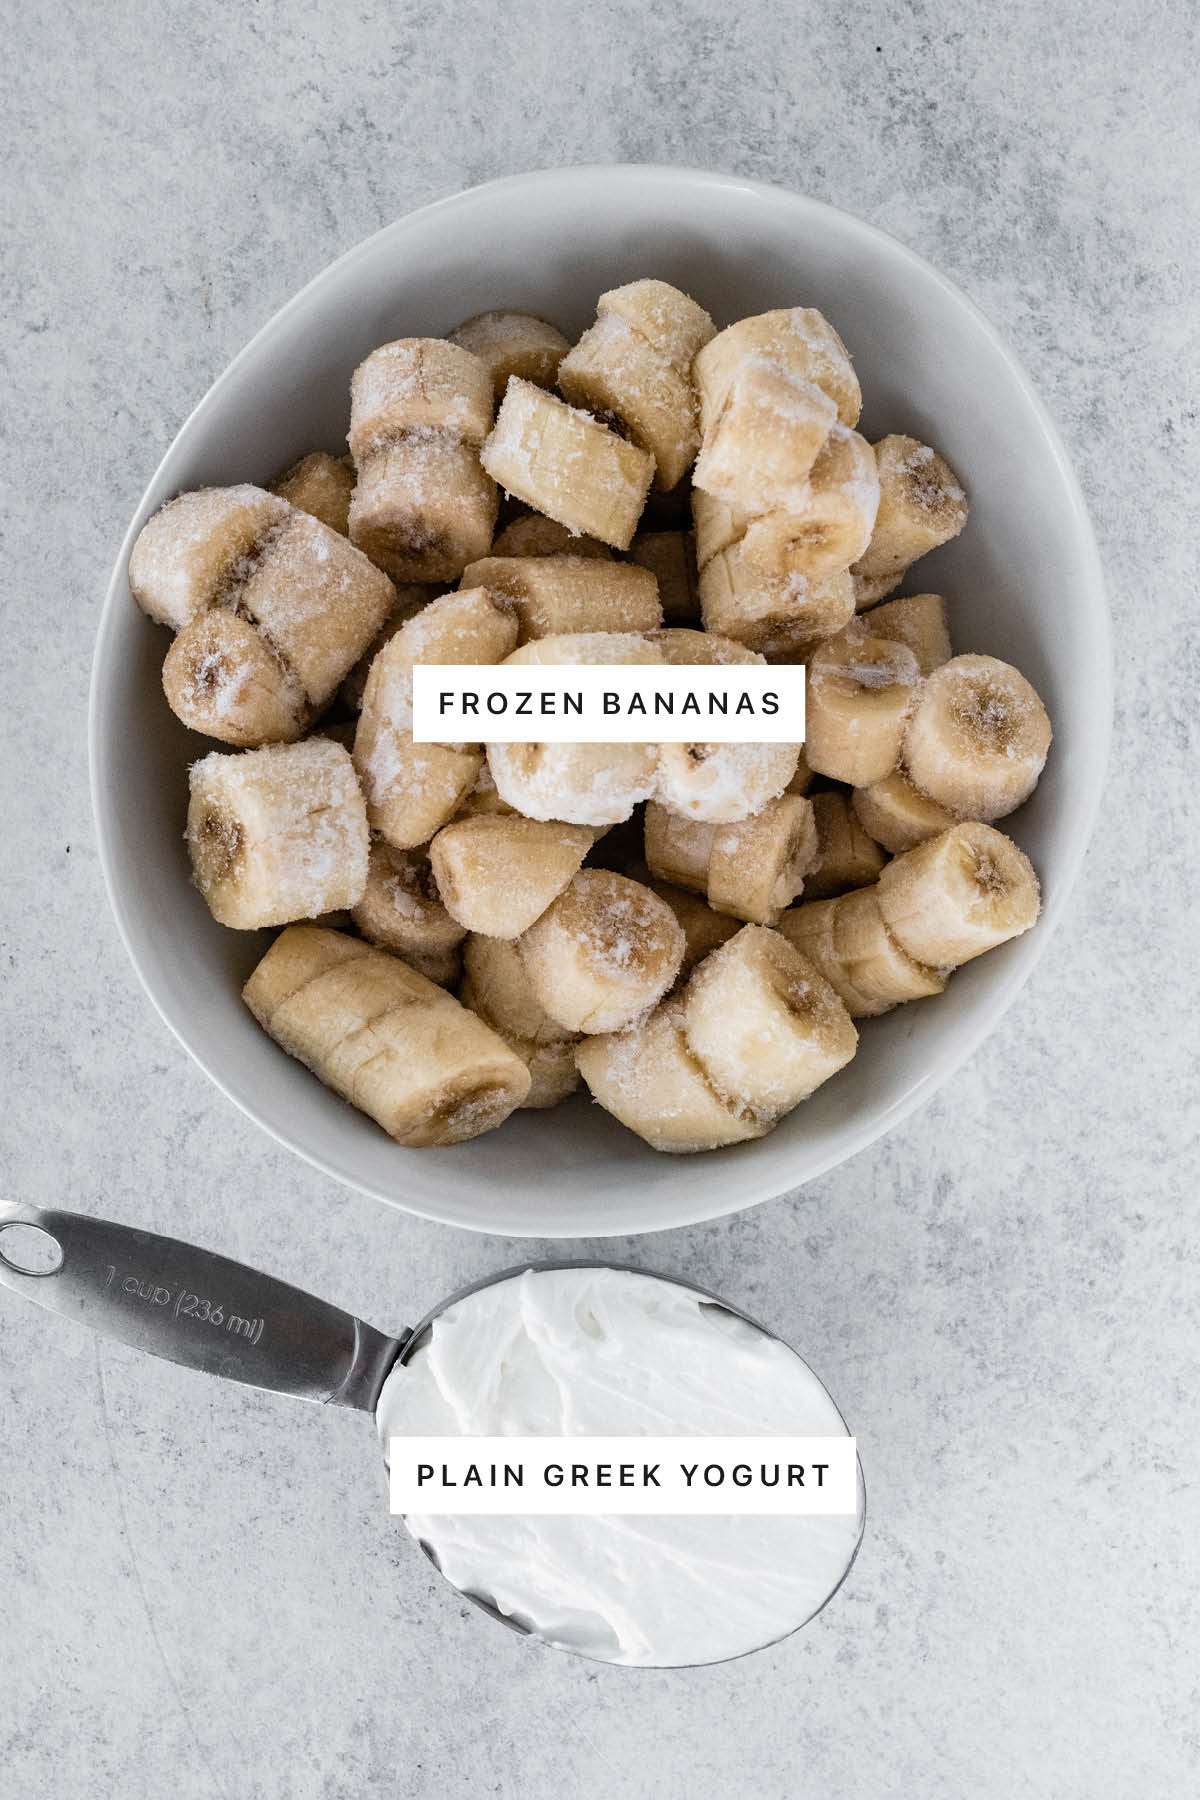 Ingredients measured out to make 2-Ingredient Banana Frozen Yogurt: frozen bananas and plain Greek yogurt.